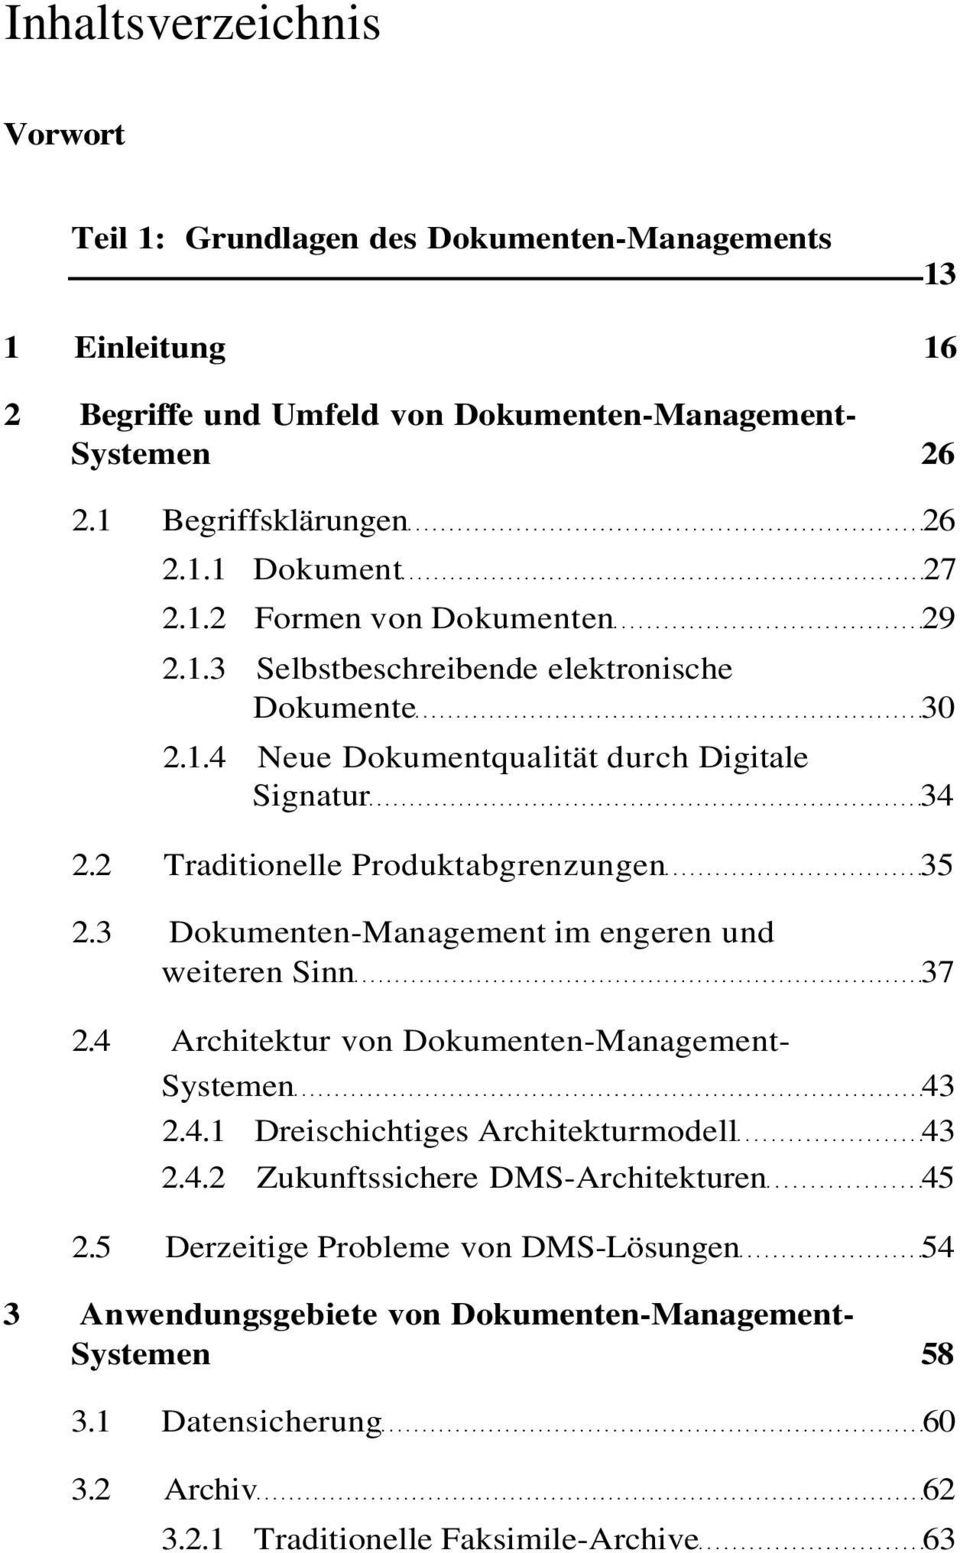 3 Dokumenten-Management im engeren und weiteren Sinn 37 2.4 Architektur von Dokumenten-Management- Systemen 43 2.4.1 Dreischichtiges Architekturmodell 43 2.4.2 Zukunftssichere DMS-Architekturen 45 2.